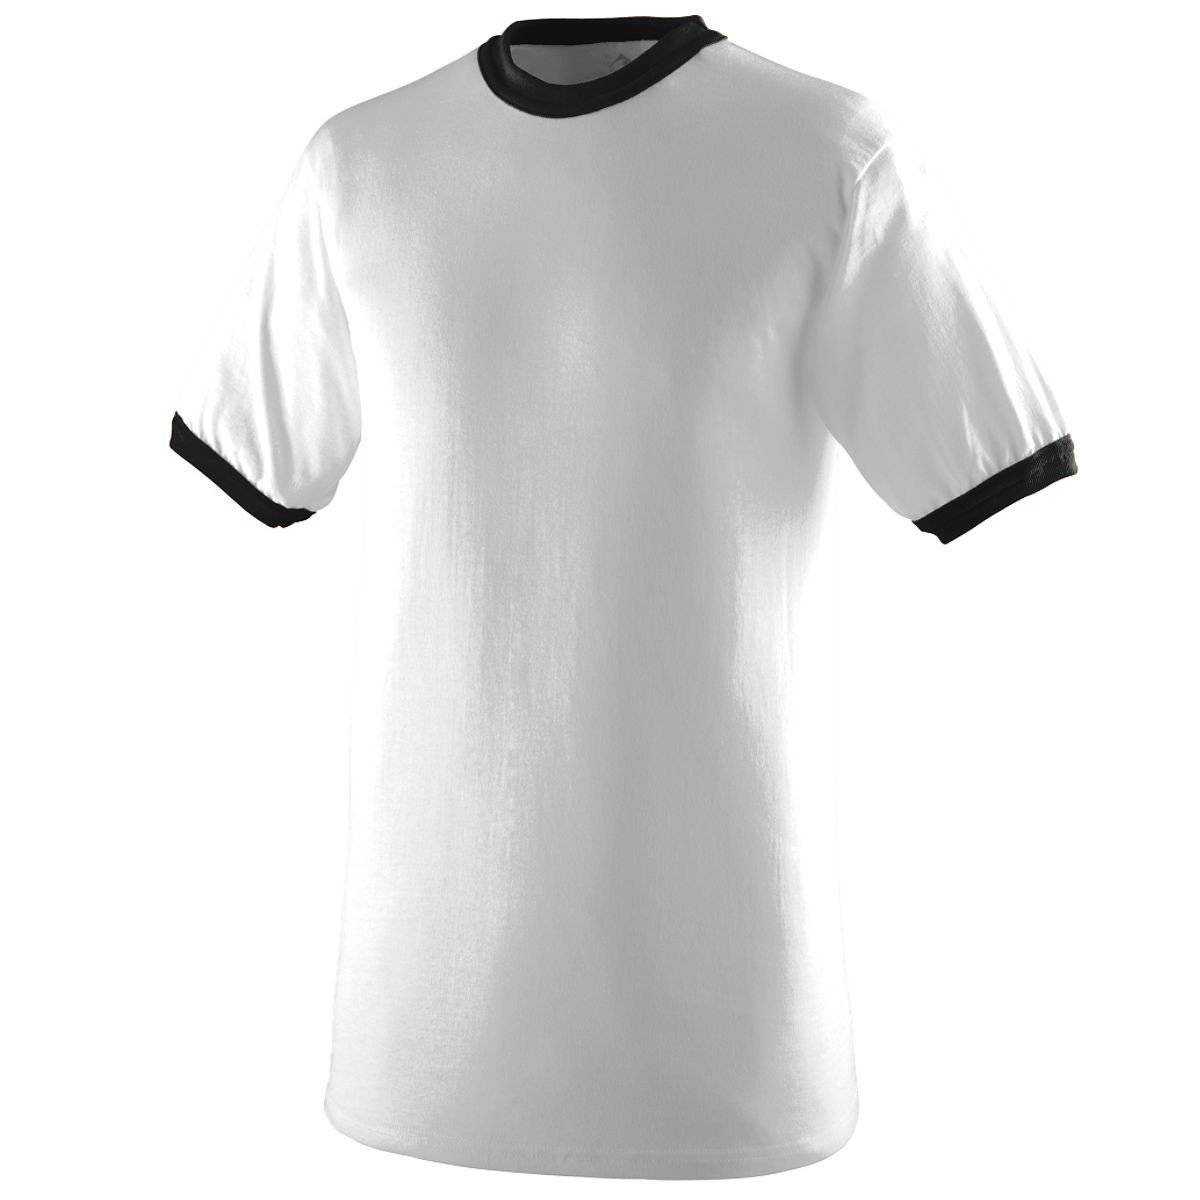 Augusta 710 Ringer T-Shirt - White Black - HIT a Double